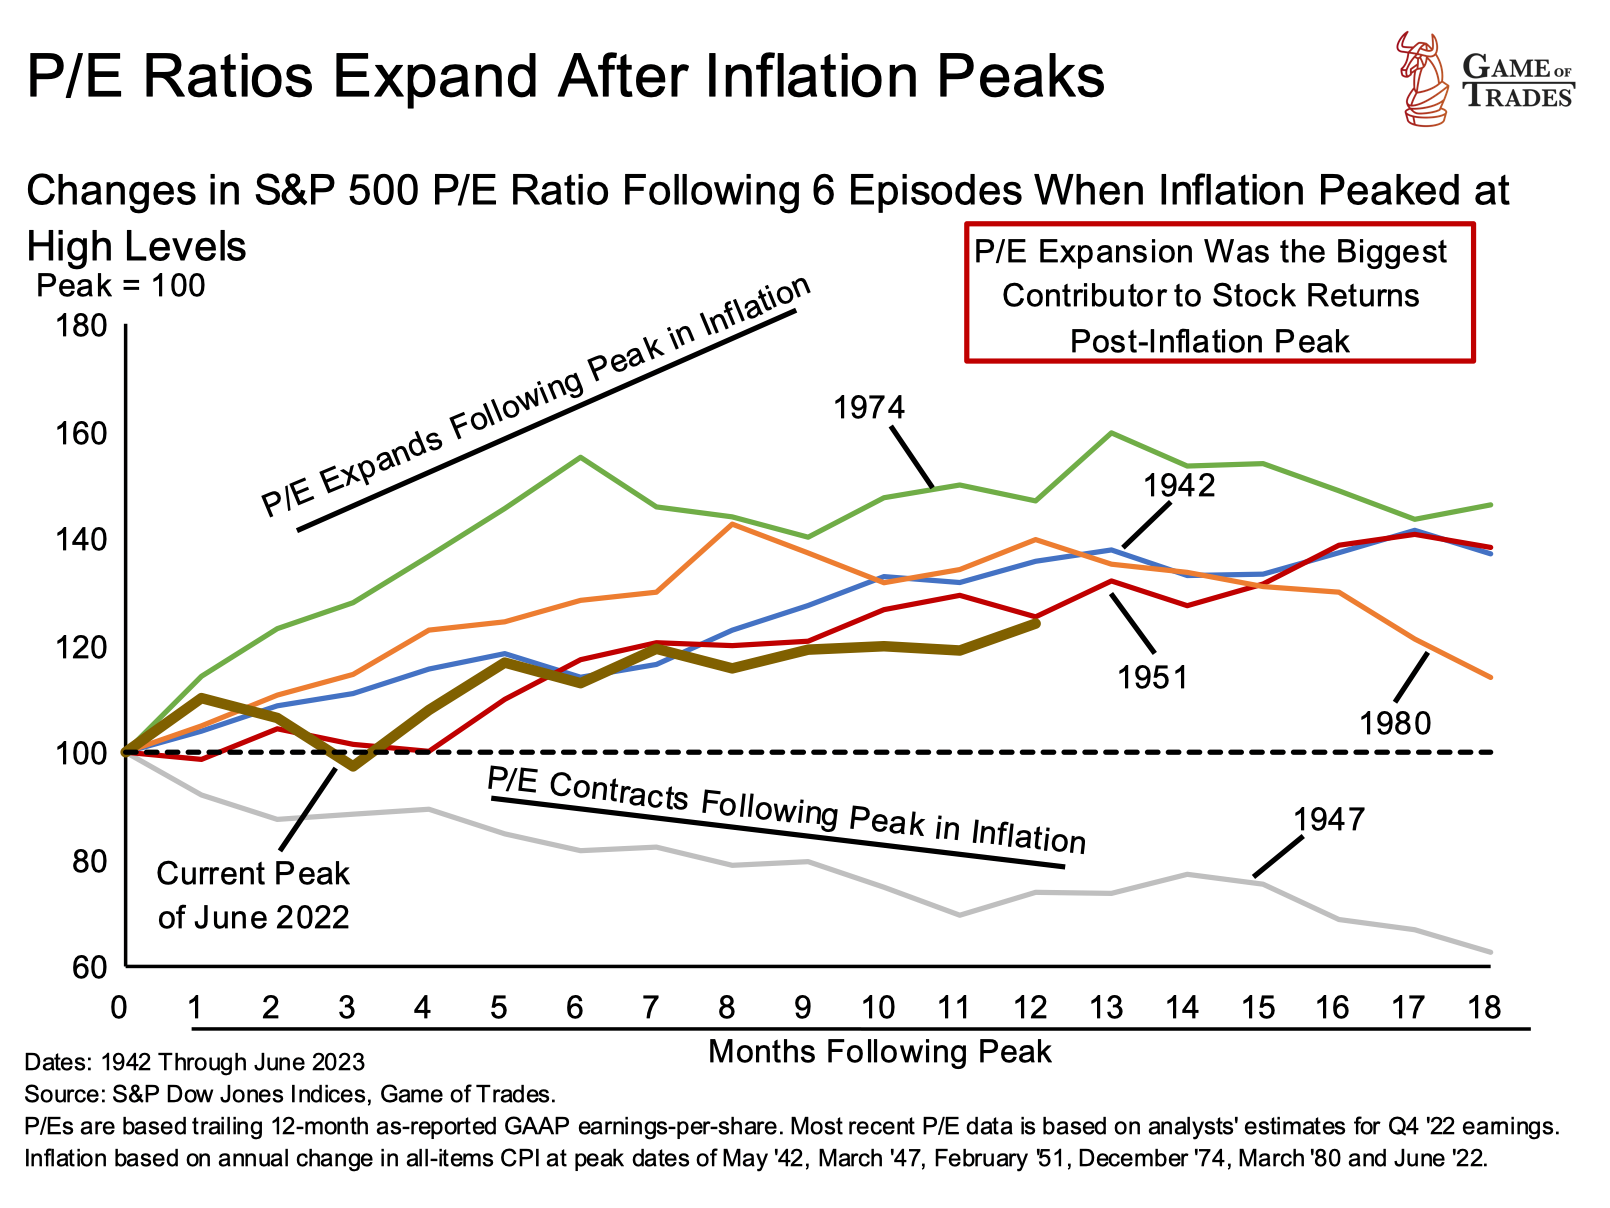 Inflation Peaks